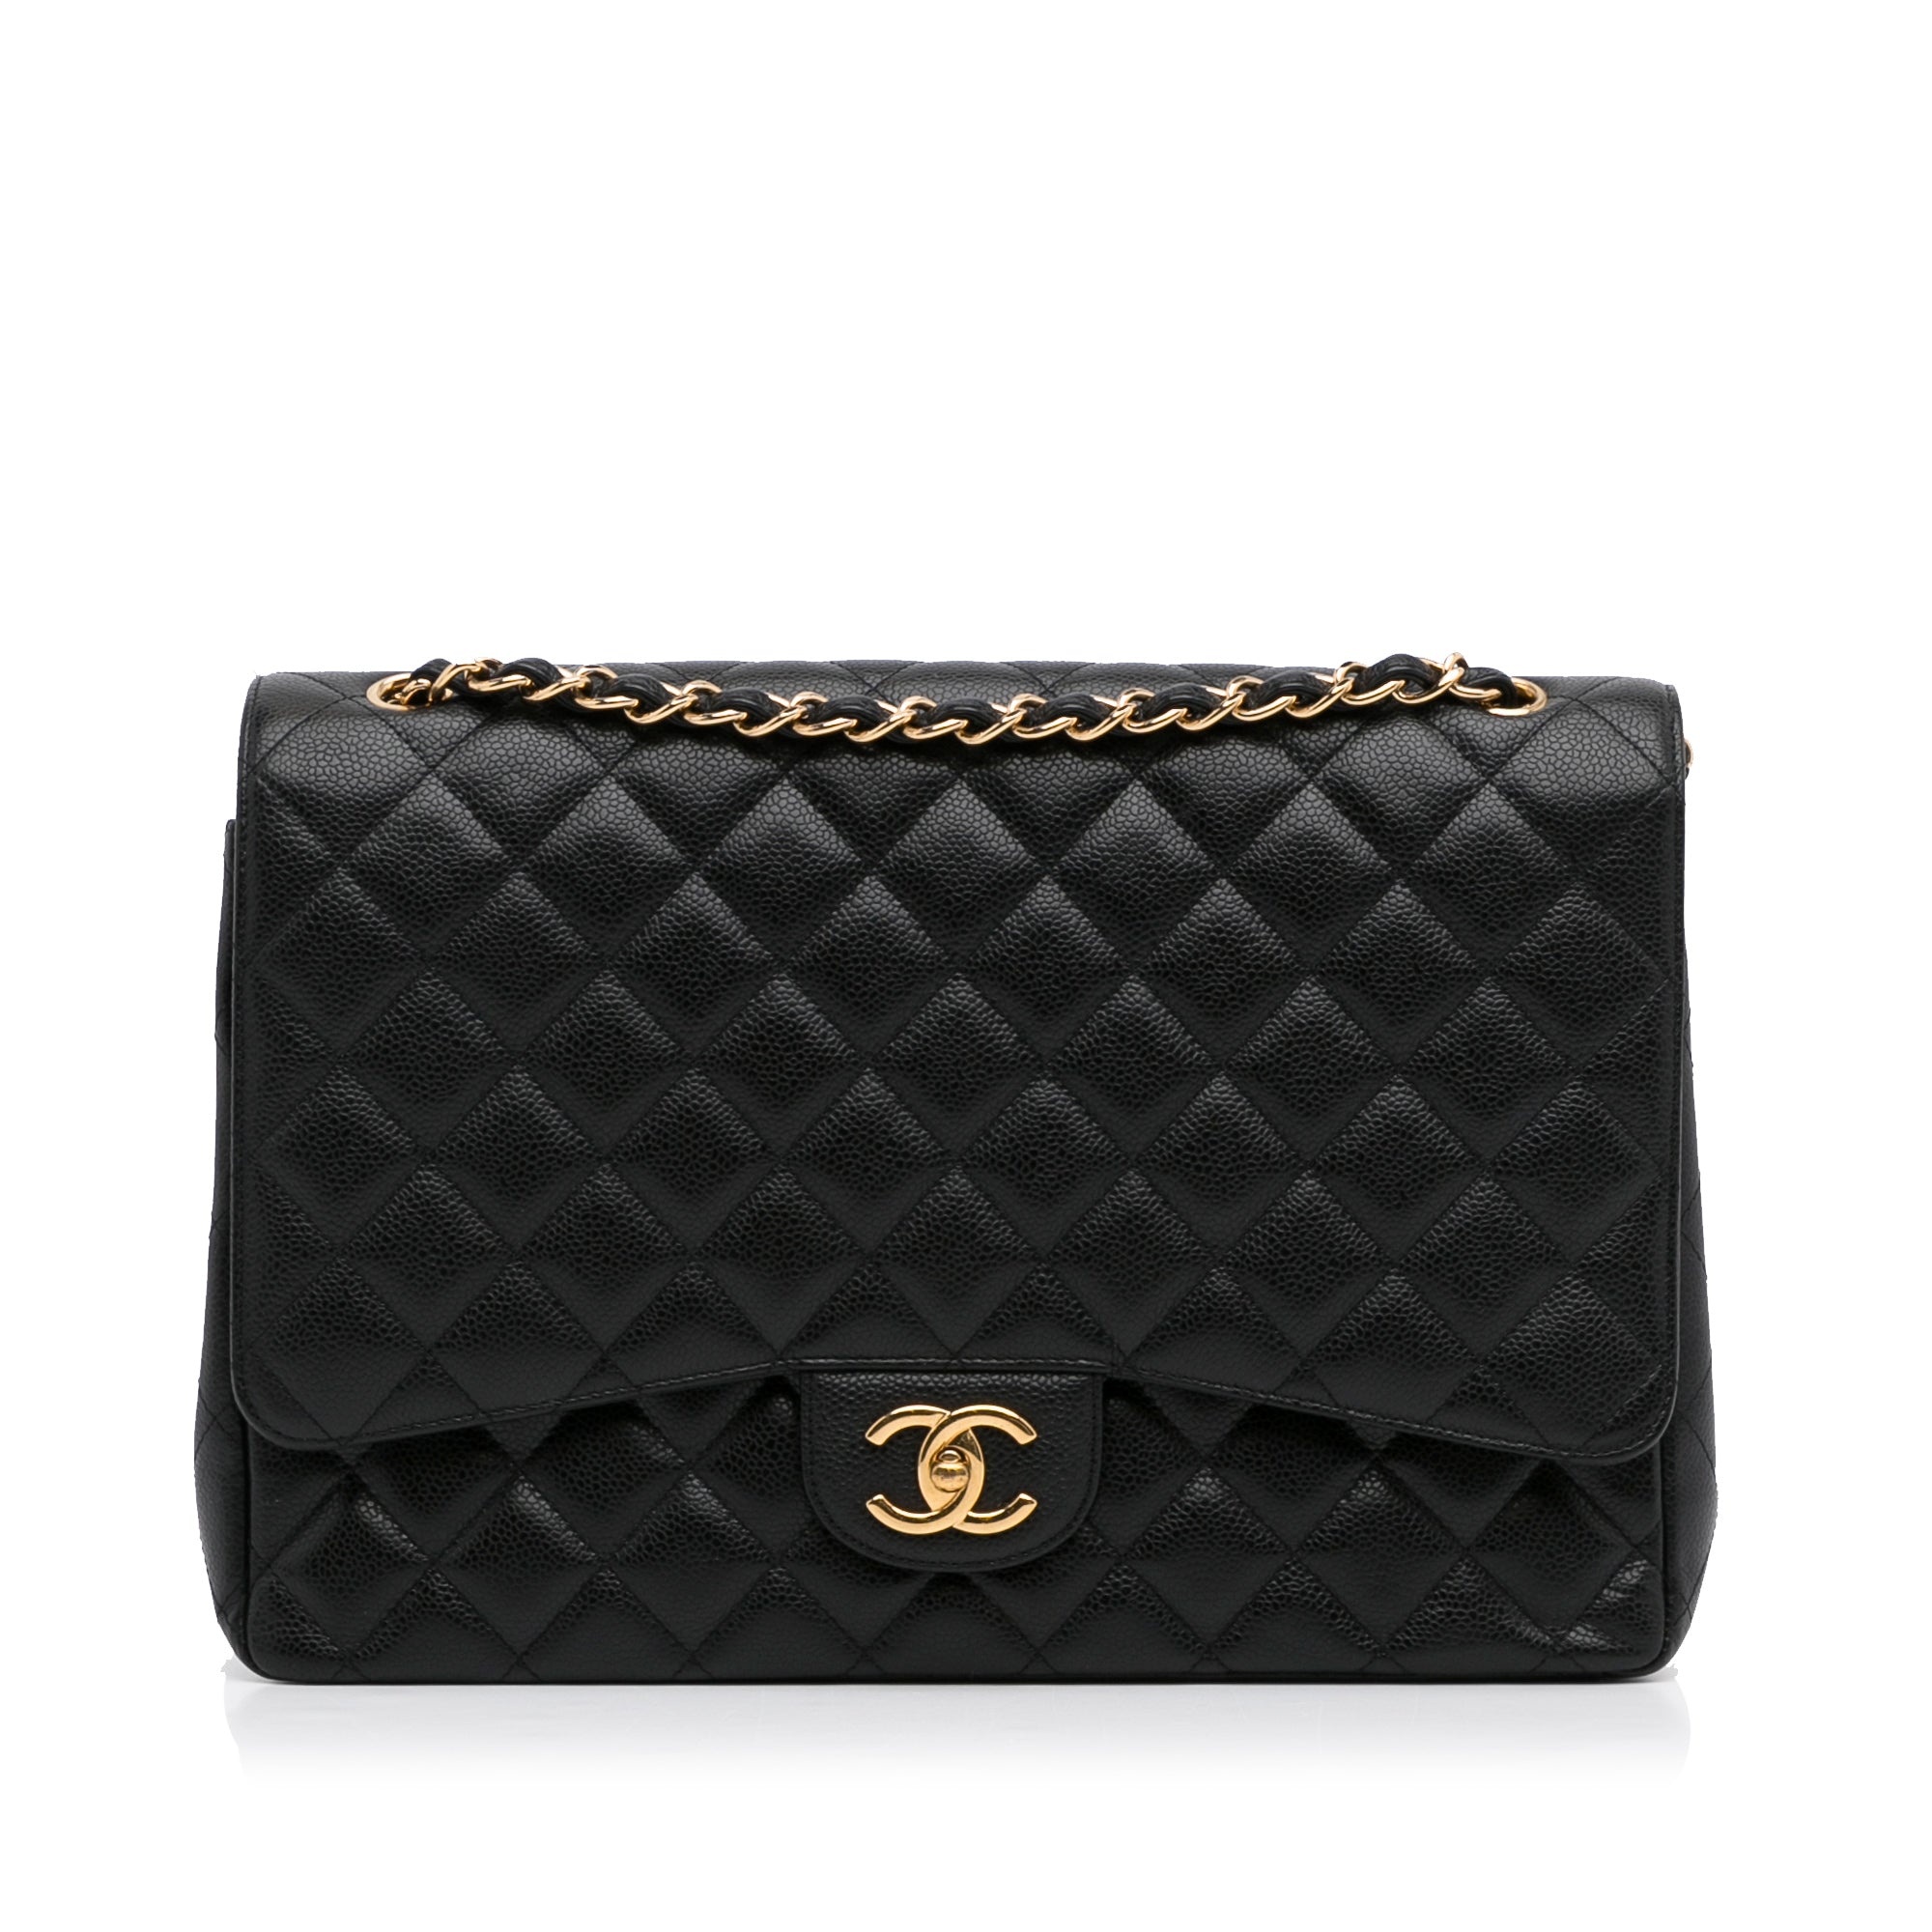 Black matelasse Chanel Maxi Classic Caviar Double Flap Shoulder Bag, RvceShops Revival